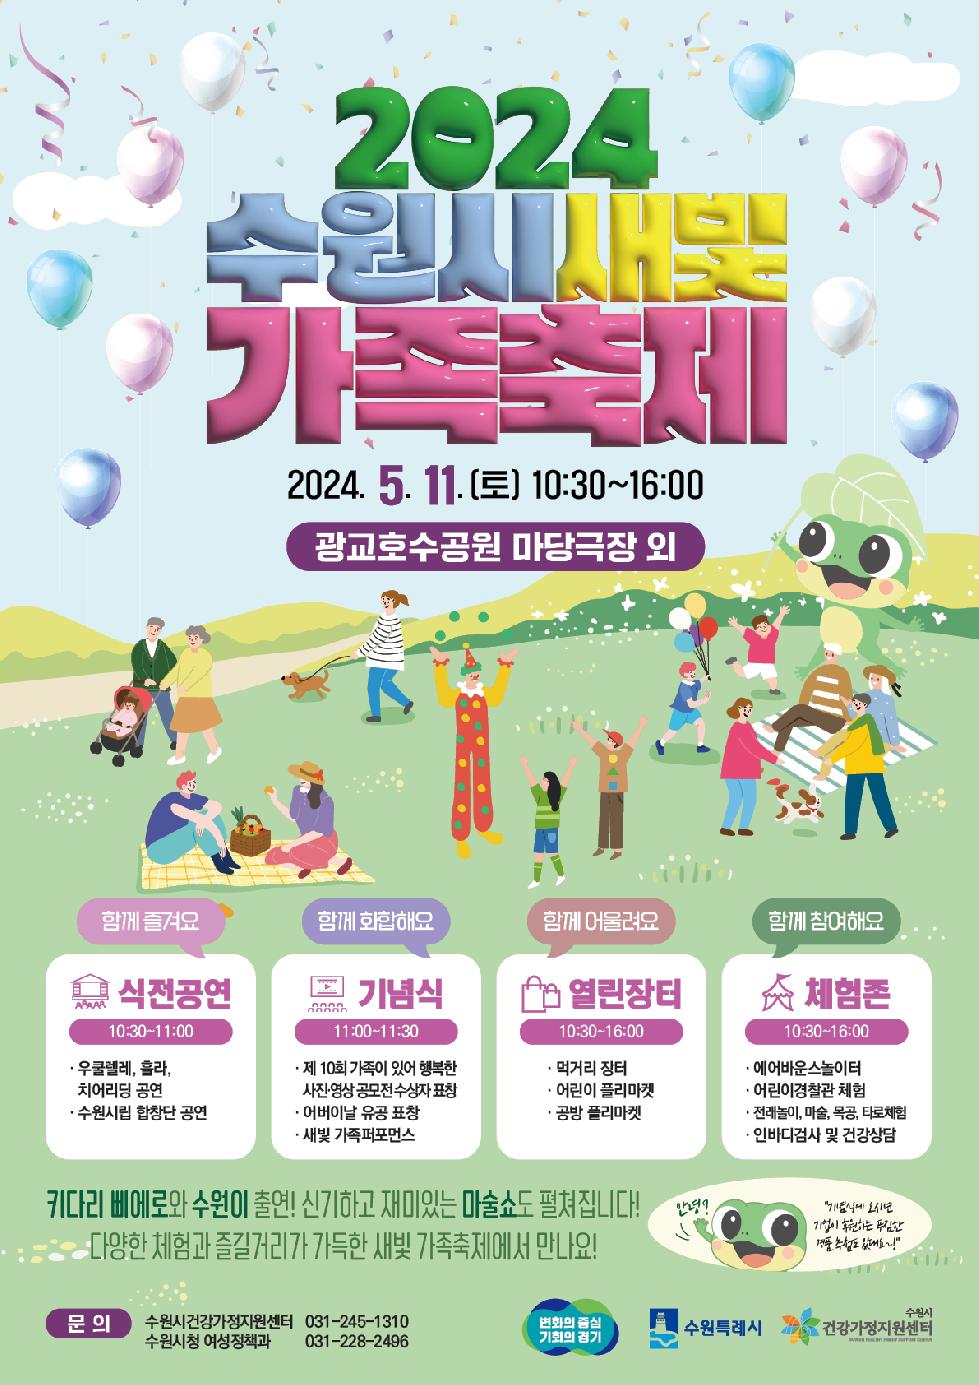 수원시 가족이 함께하는‘2024 수원시새빛가족축제, 5월 11일 광교호수공원에서 열린다